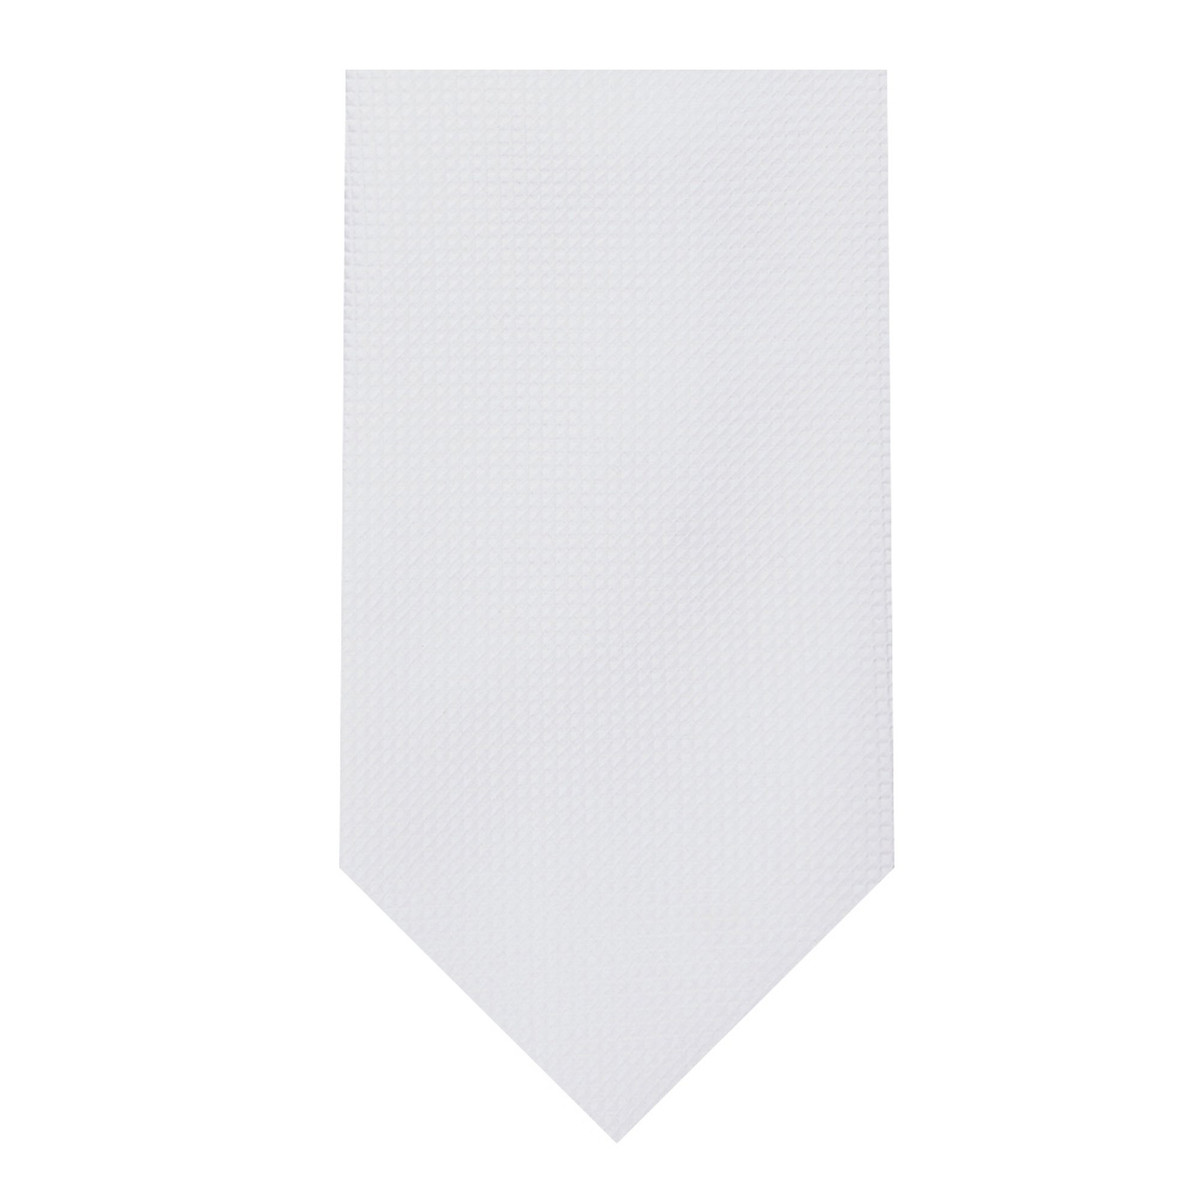 Men's Woven Subtle Mini Squares Neck Tie - White